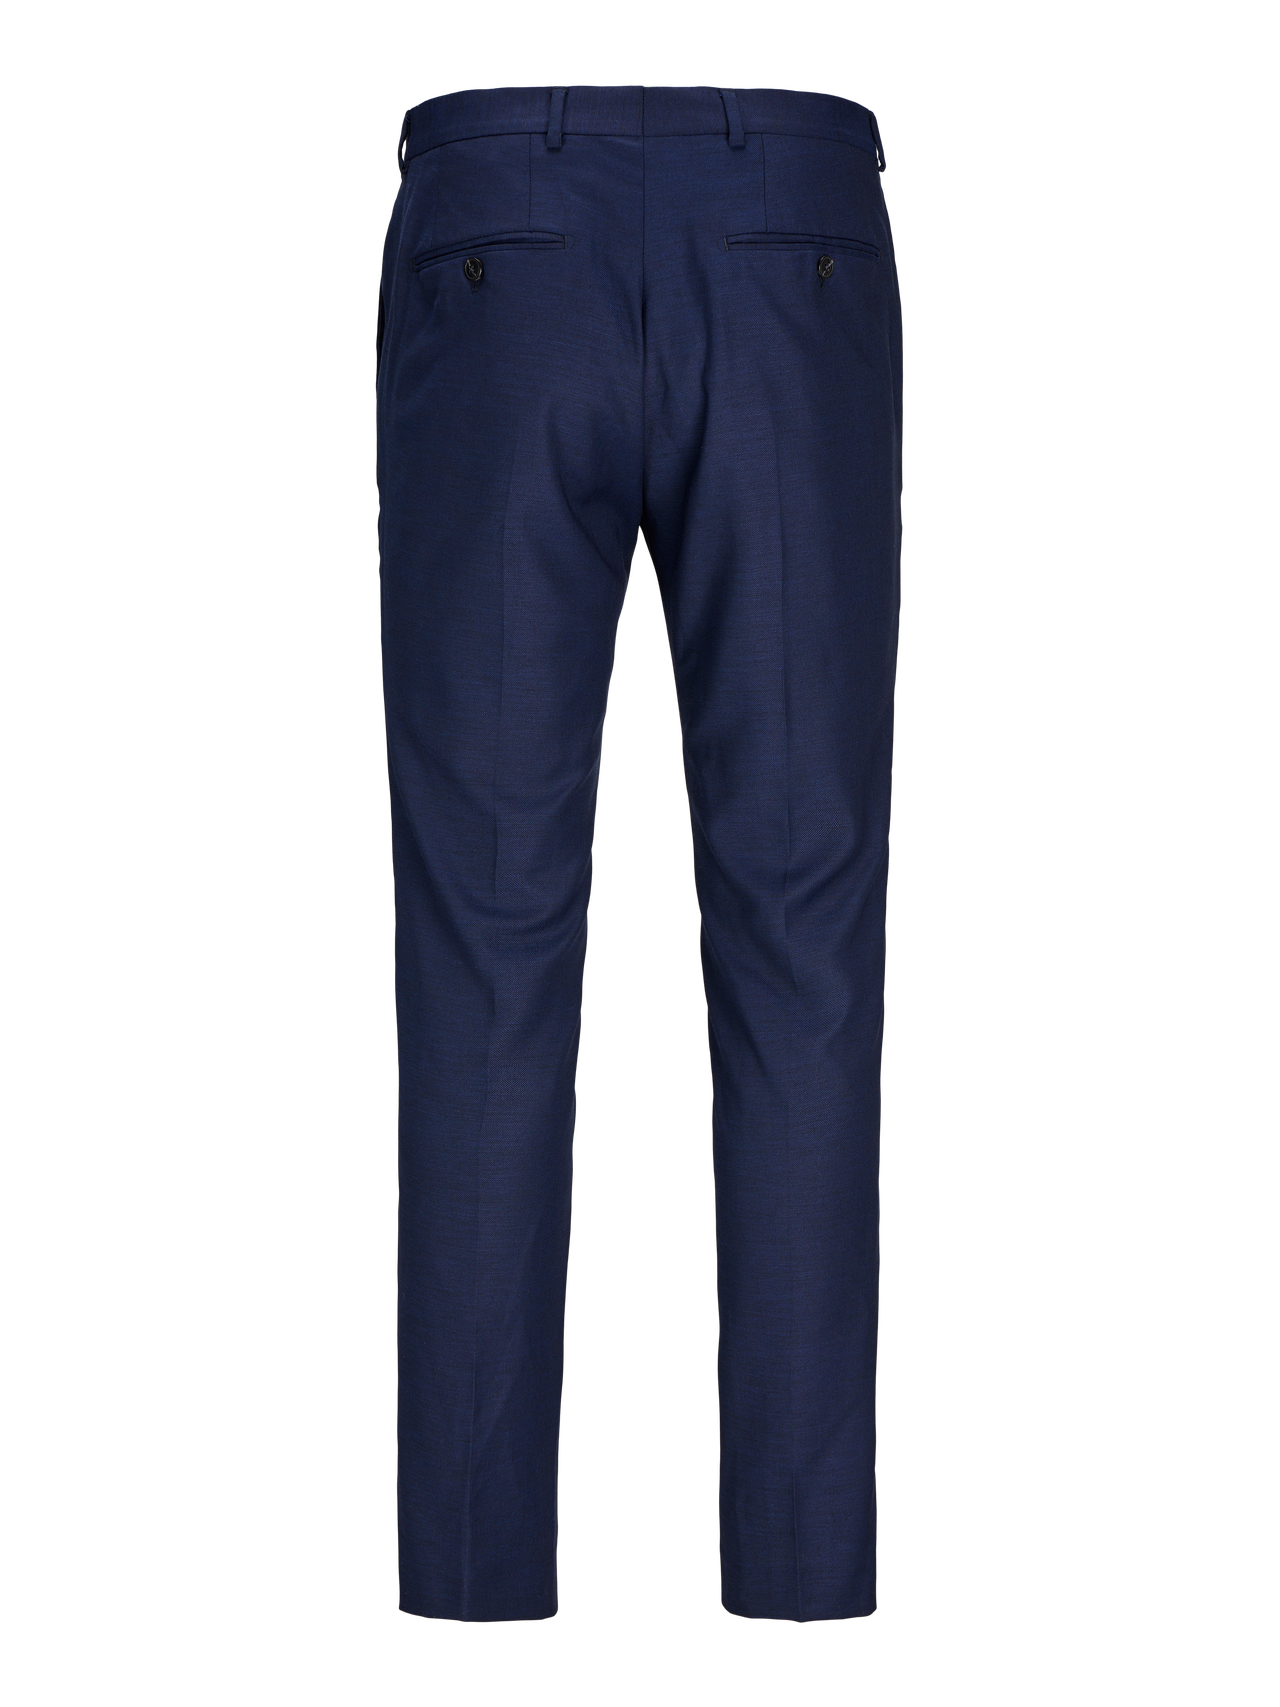 Jack & Jones Μεγάλο μέγεθος Λεπτή εφαρμογή Παντελόνι κατά παραγγελία -Dark Navy - 12263989